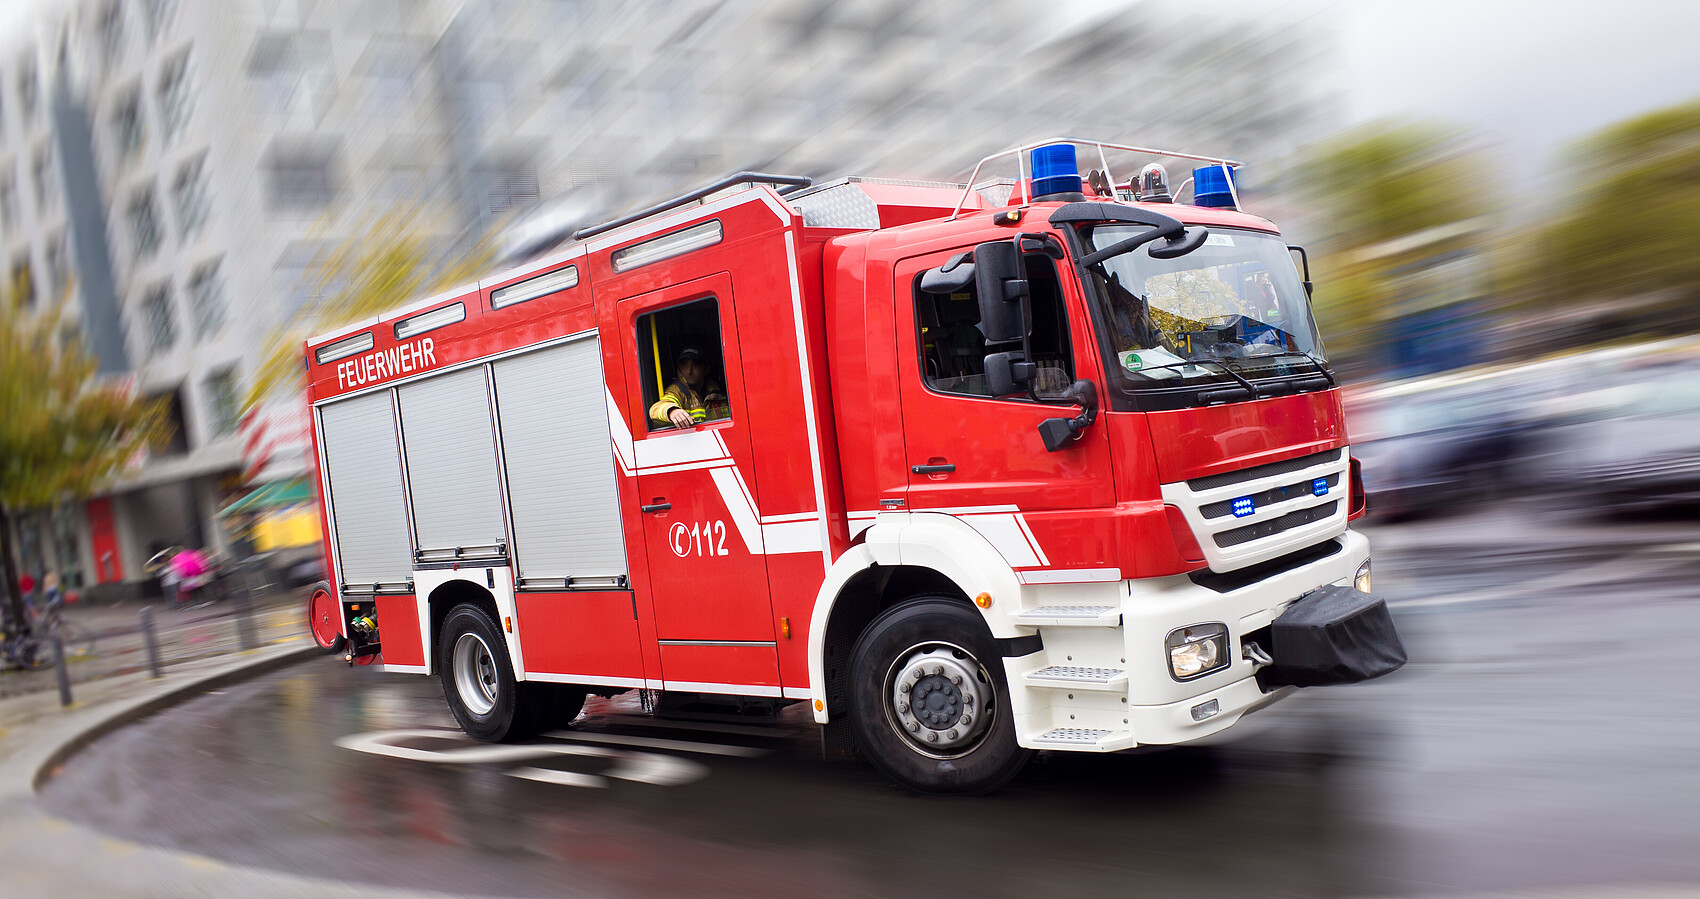 Bild zeigt ein Feuerwehrauto